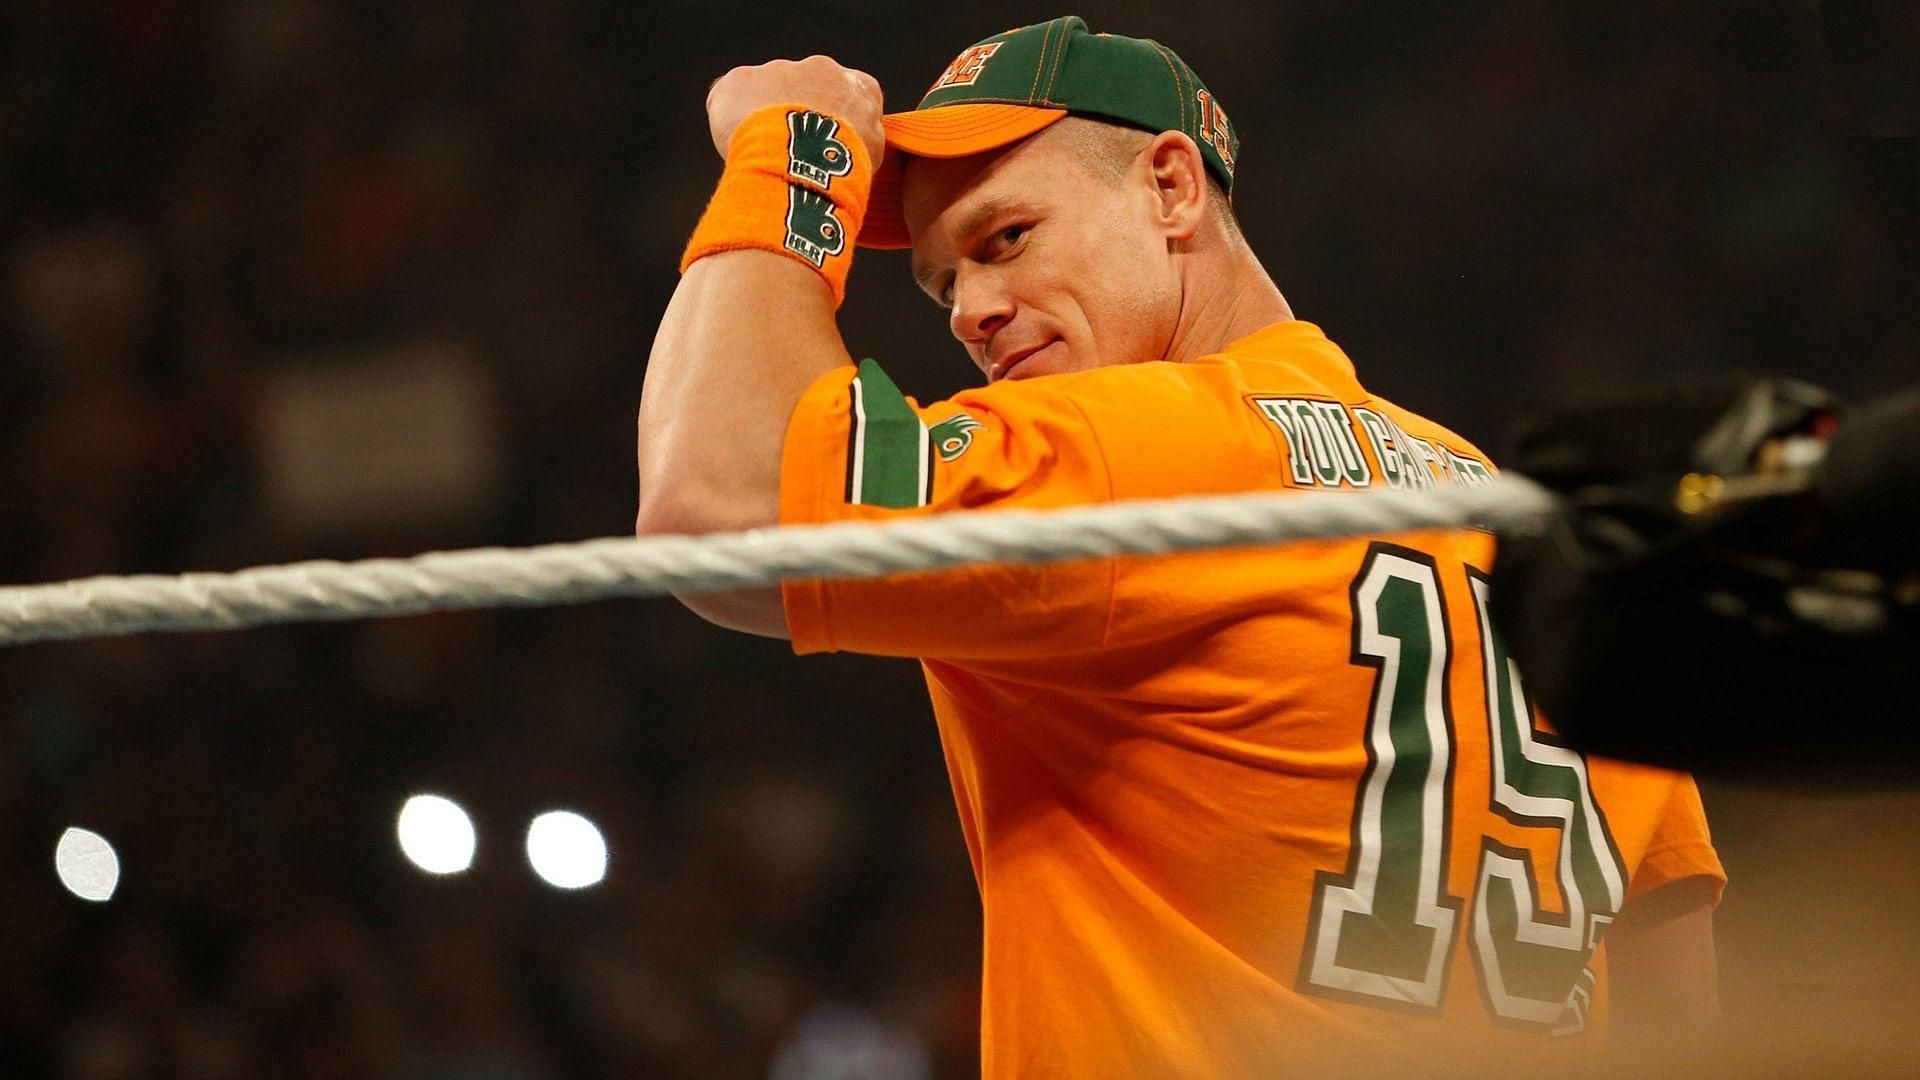 John Cena will return on June 27.